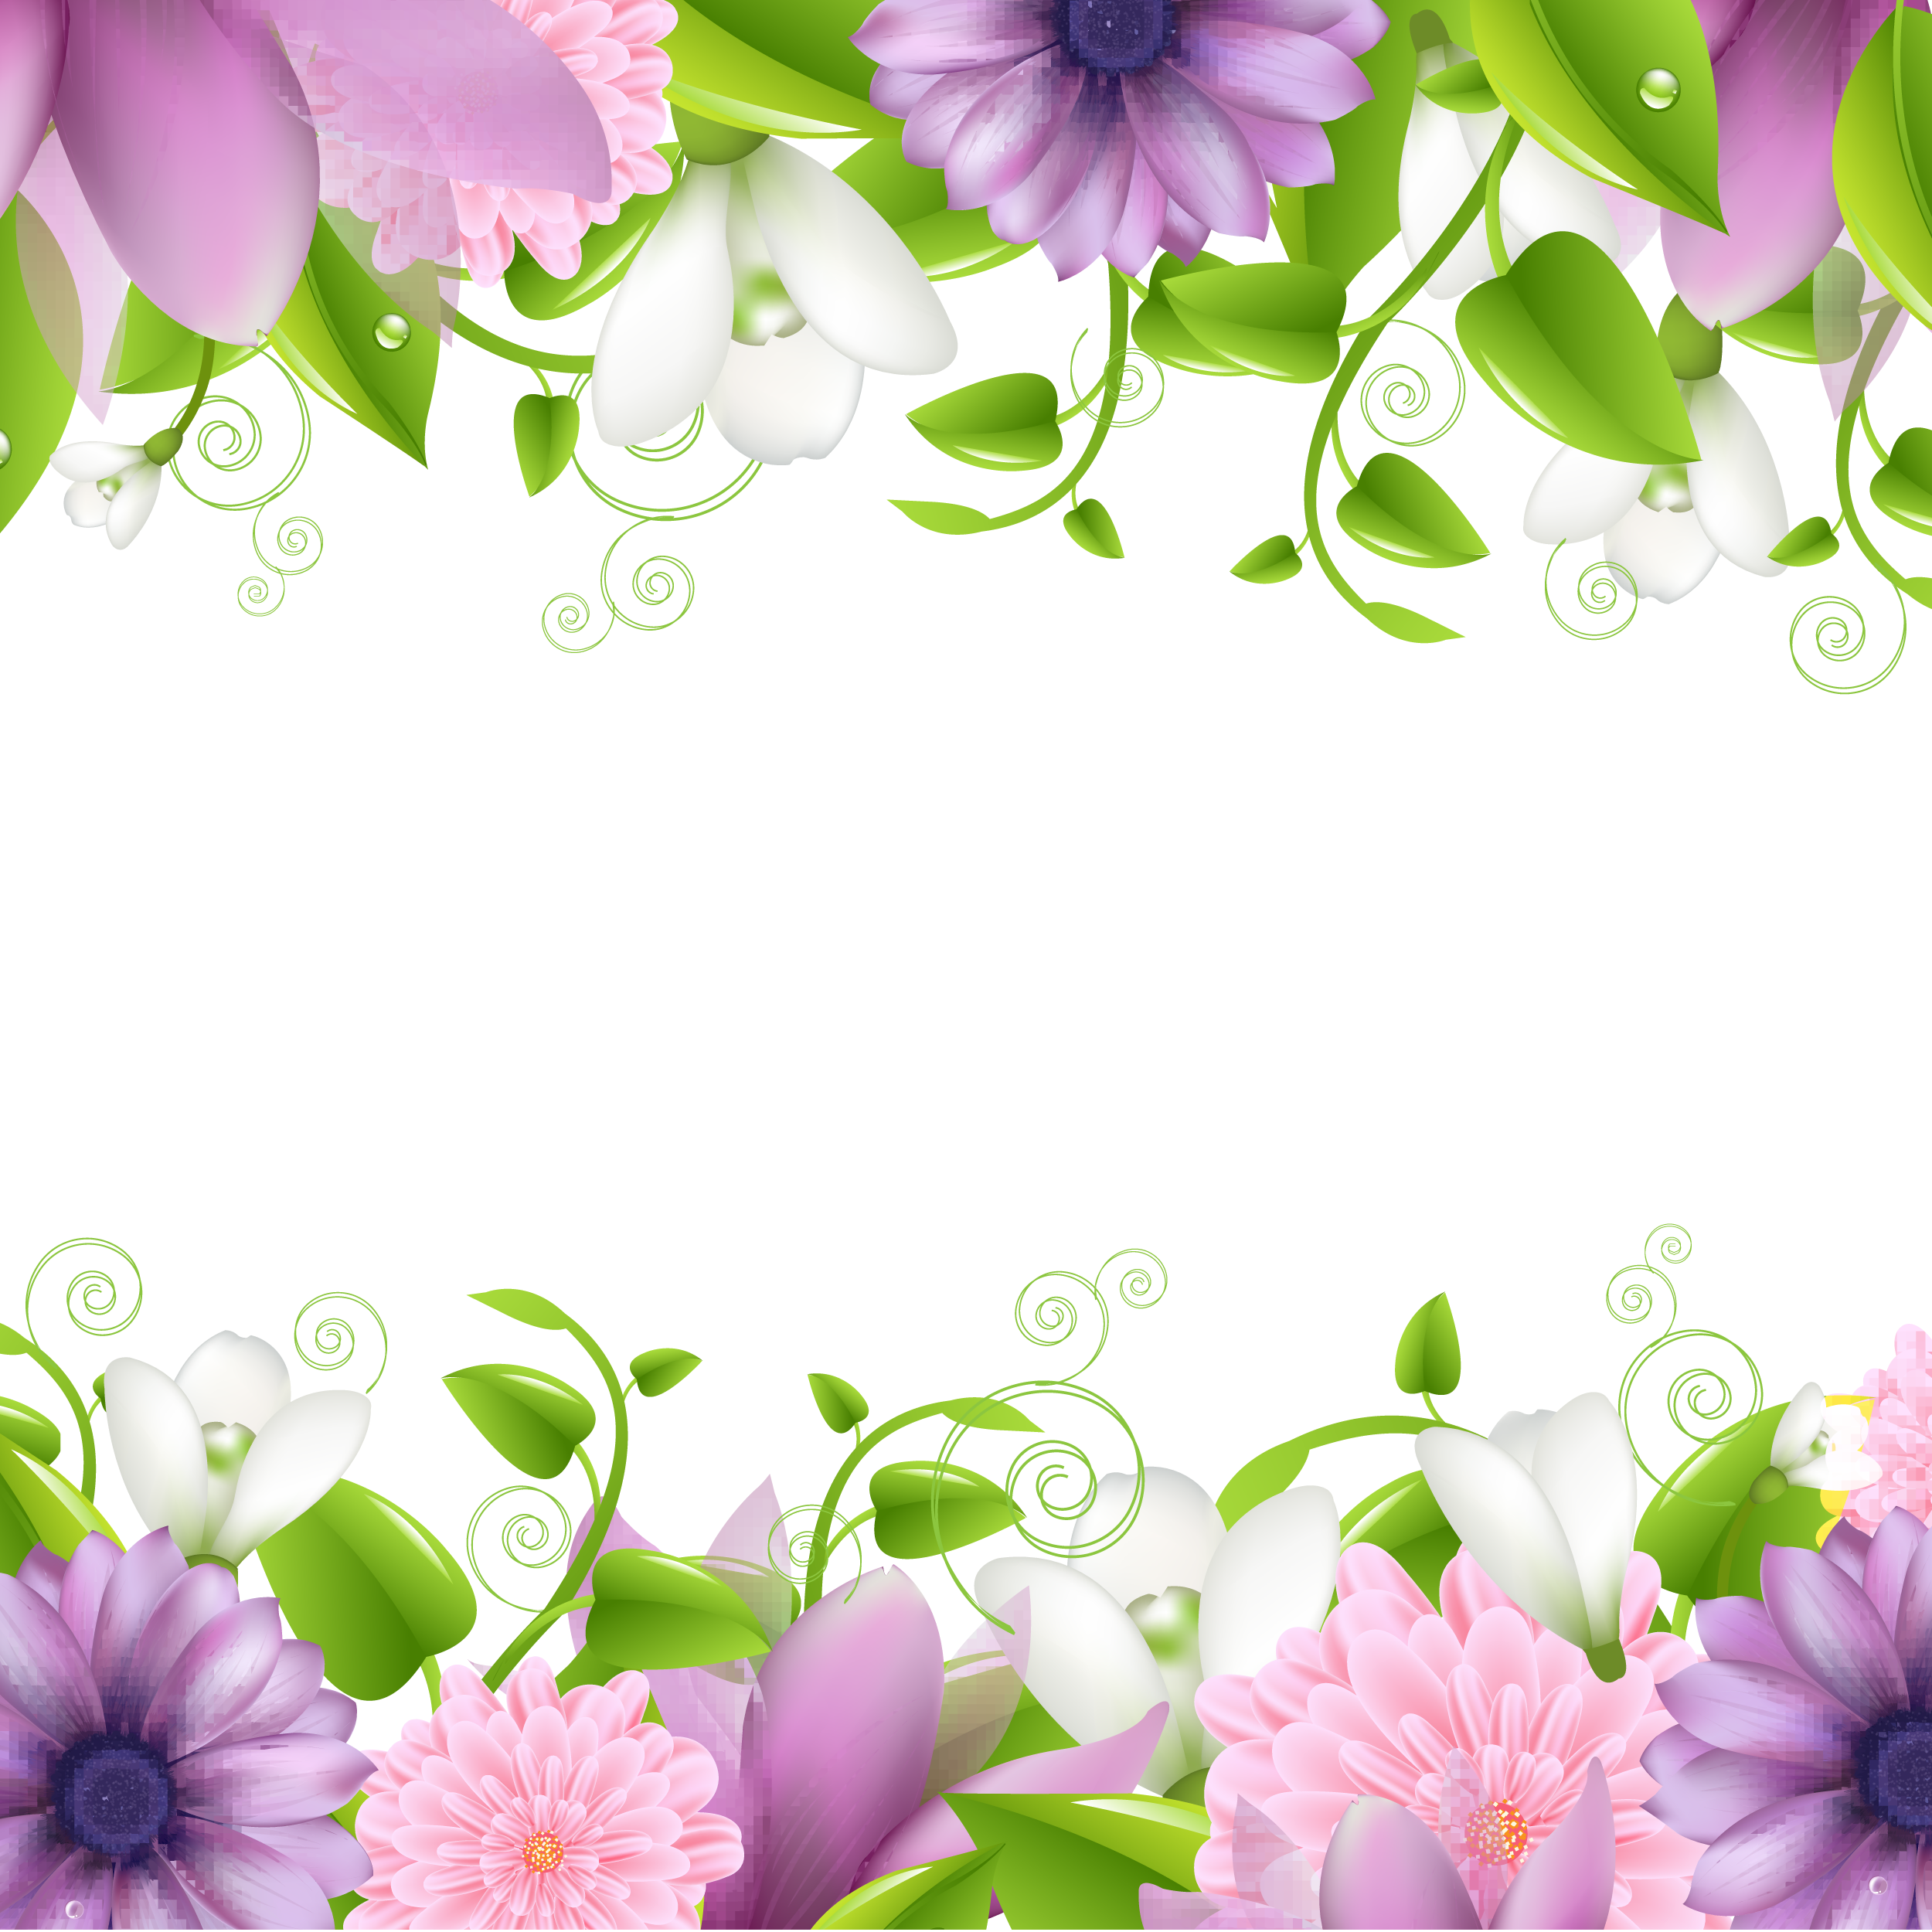 花のイラスト フリー素材 壁紙 背景no 3 紫白ピンク 緑葉